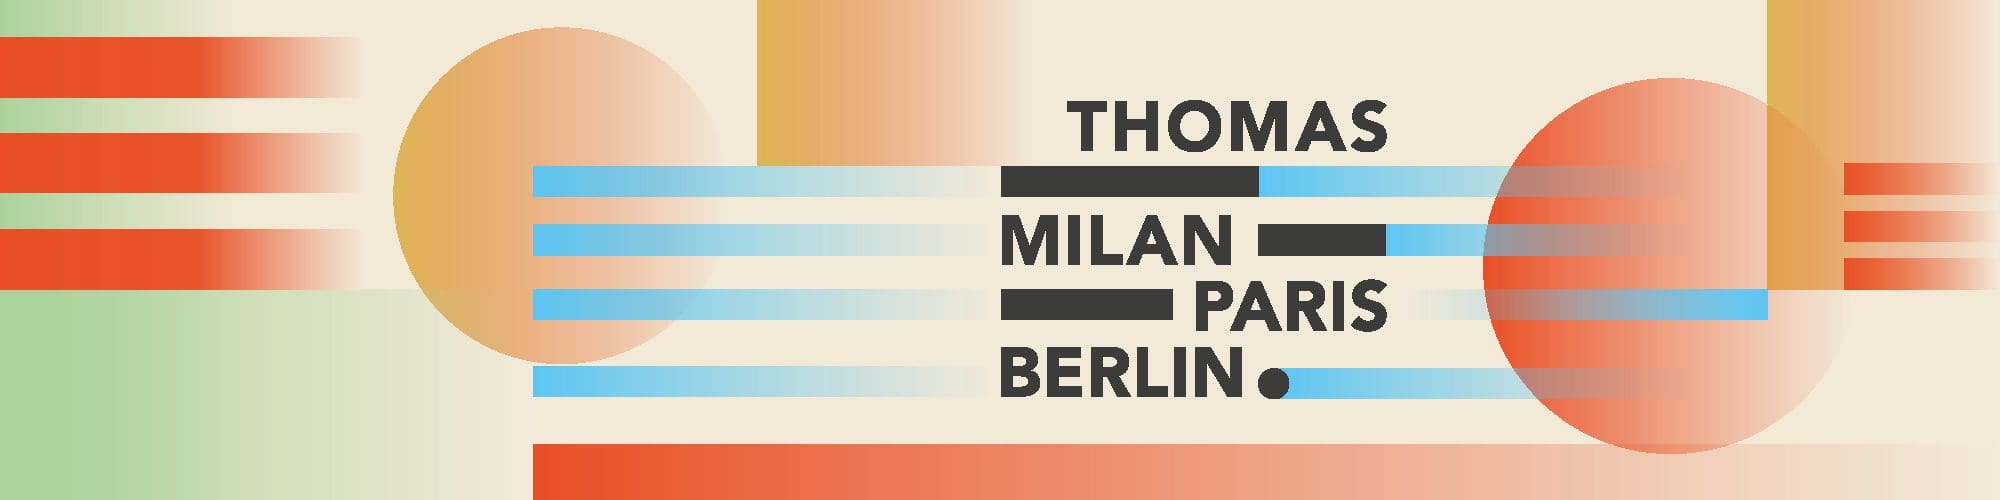 bannière bauhaus pour Thomas milan paris berlin, signé Ich&Kar